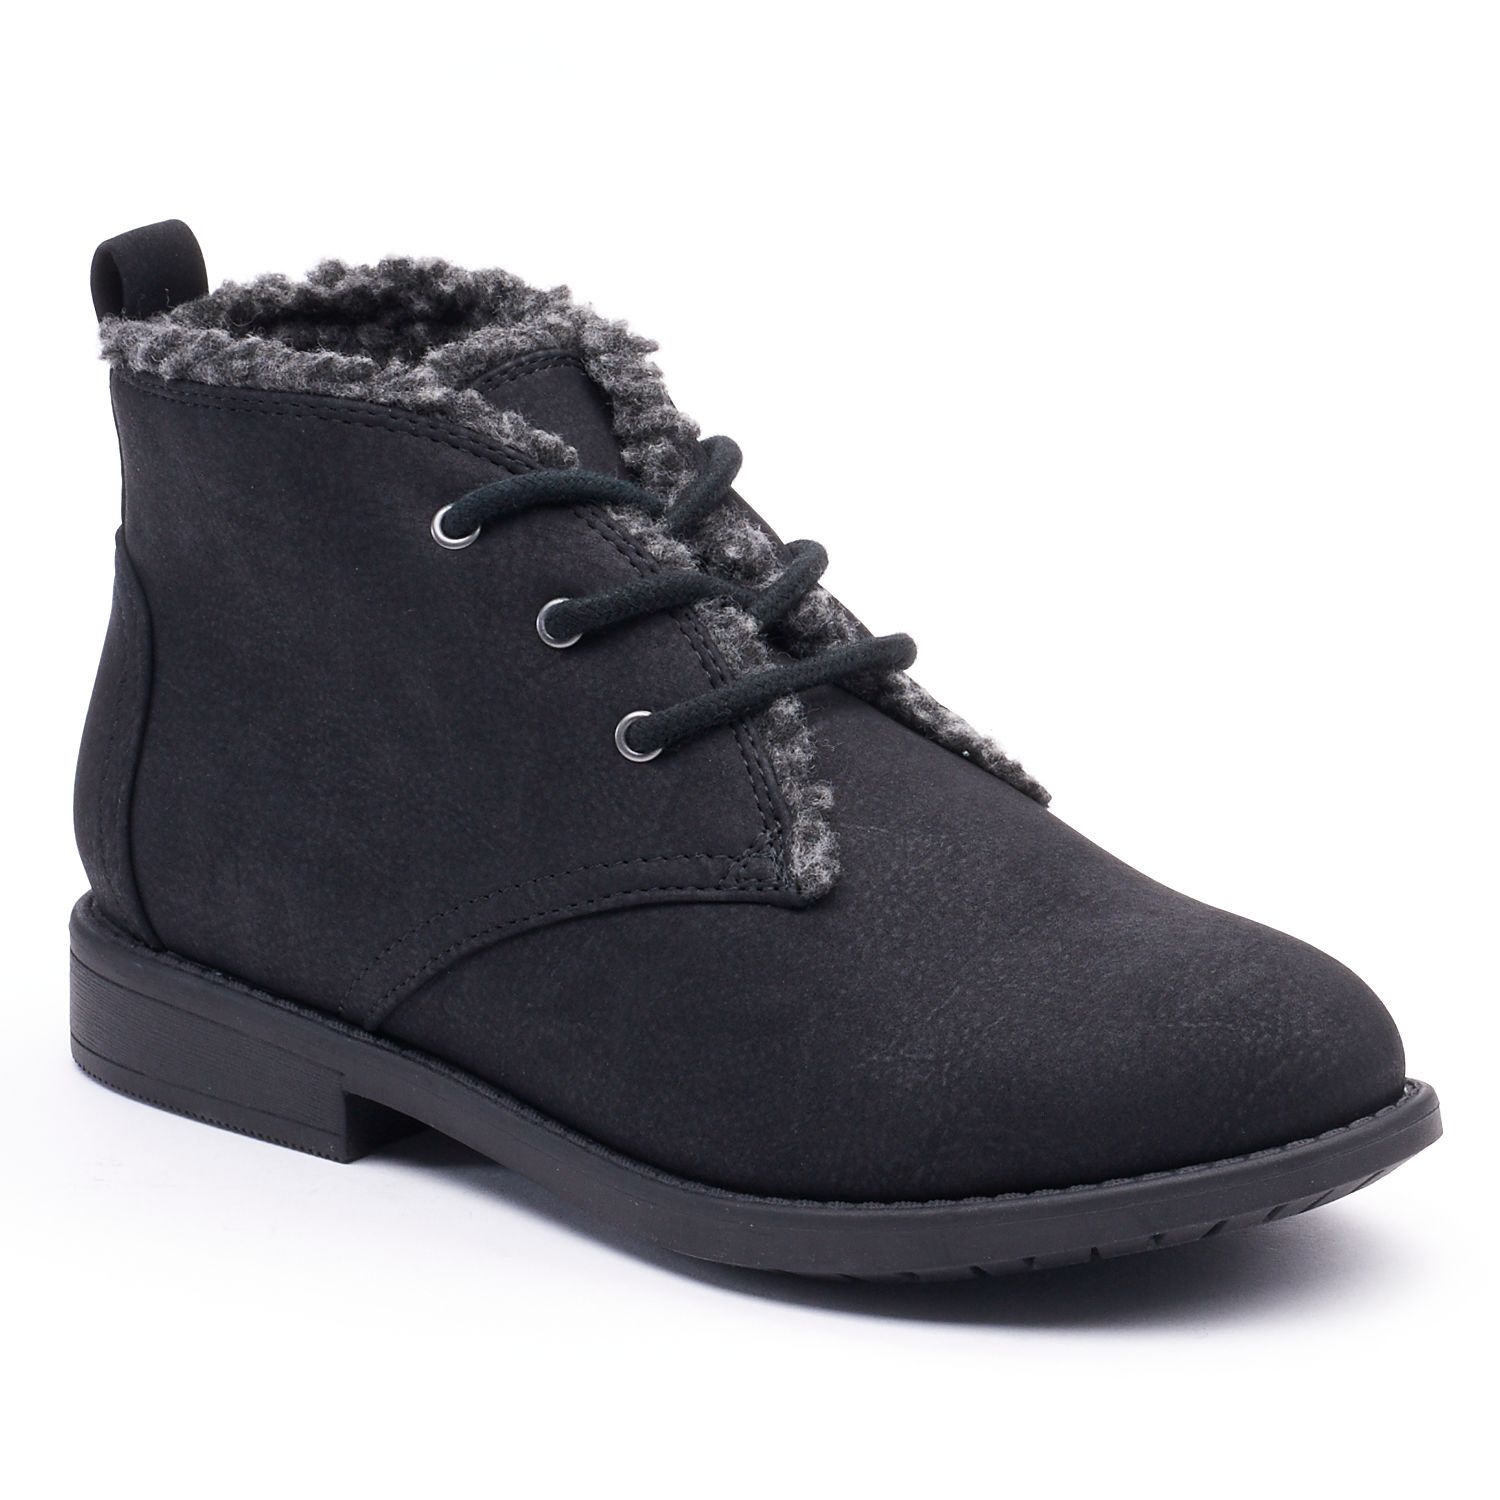 Life® Melina Women's Winter Chukka Boots